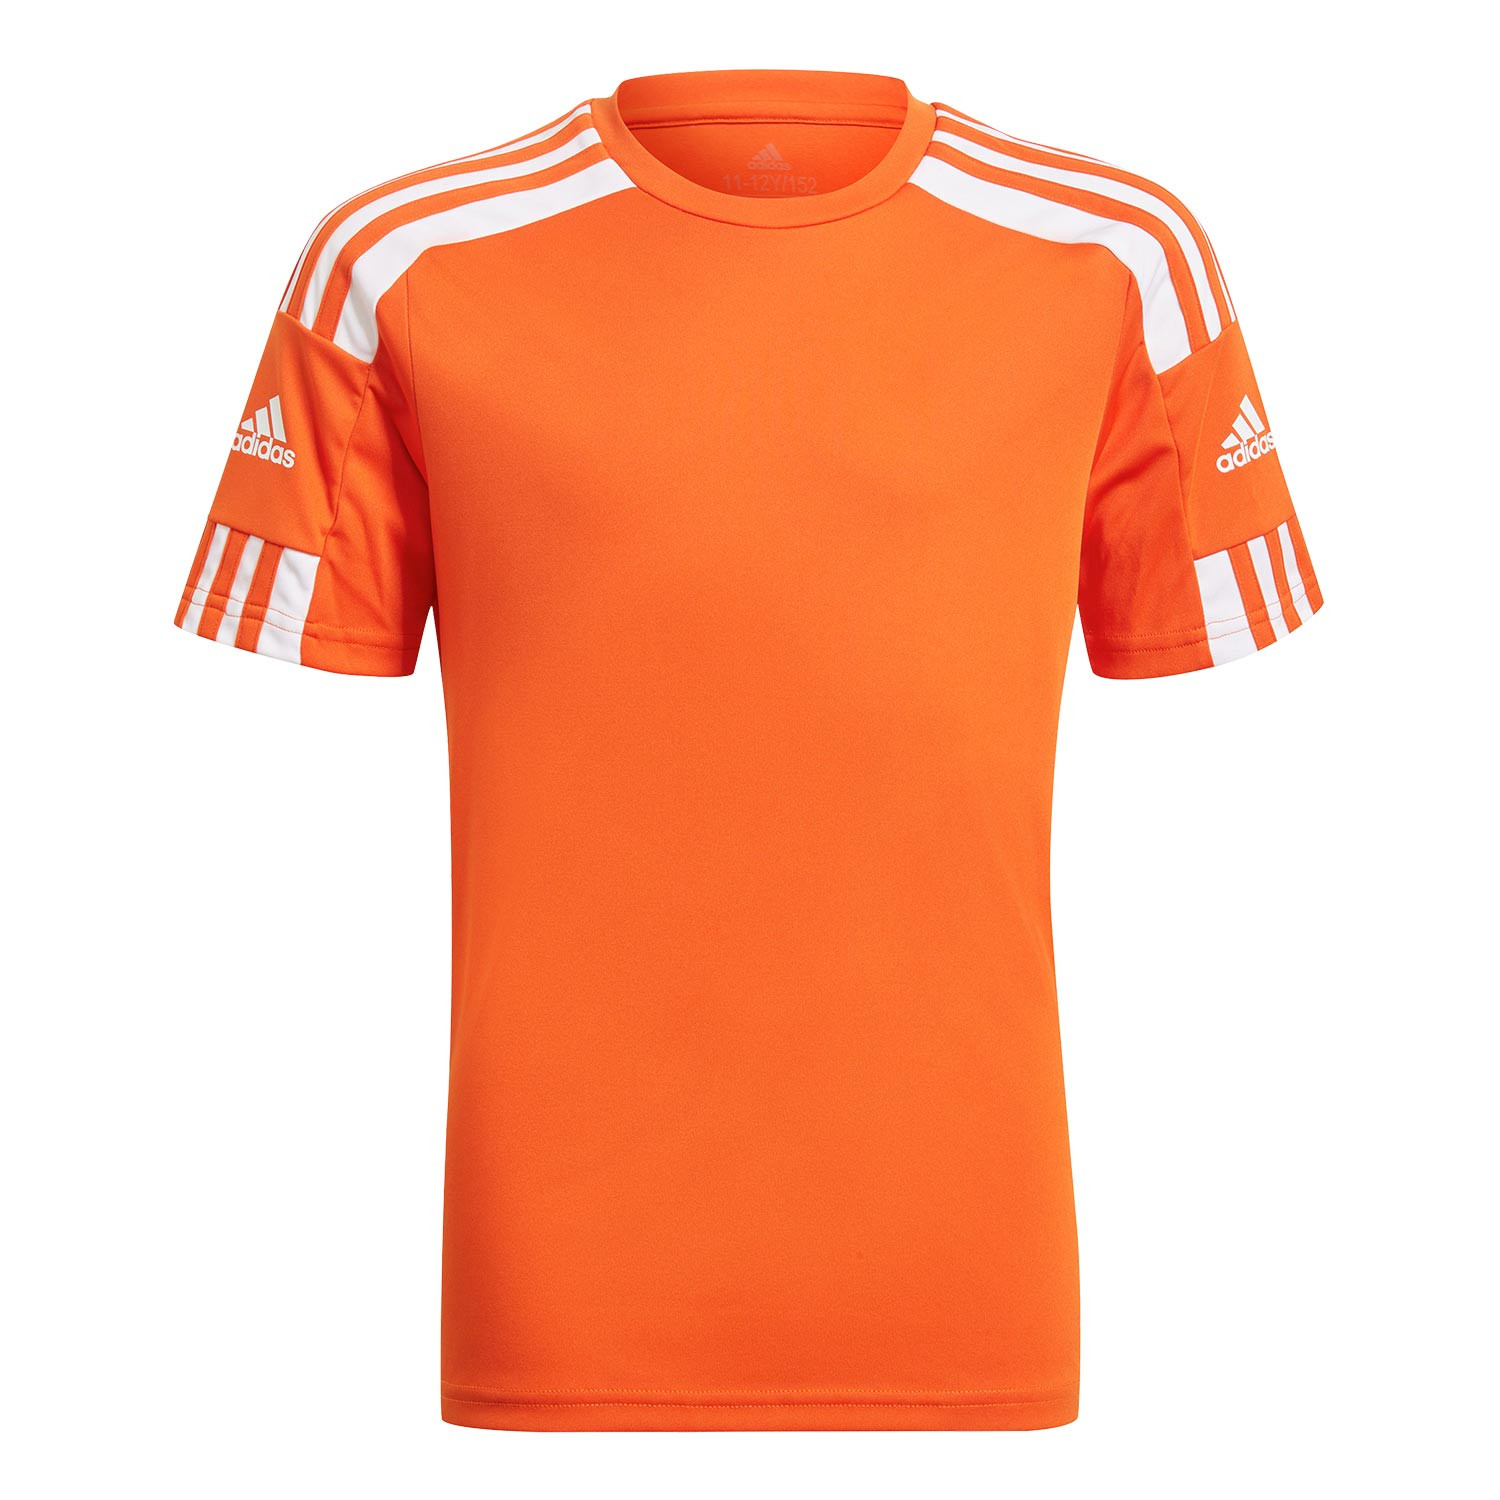 Camiseta adidas 21 niño naranja futbolmaniaKids